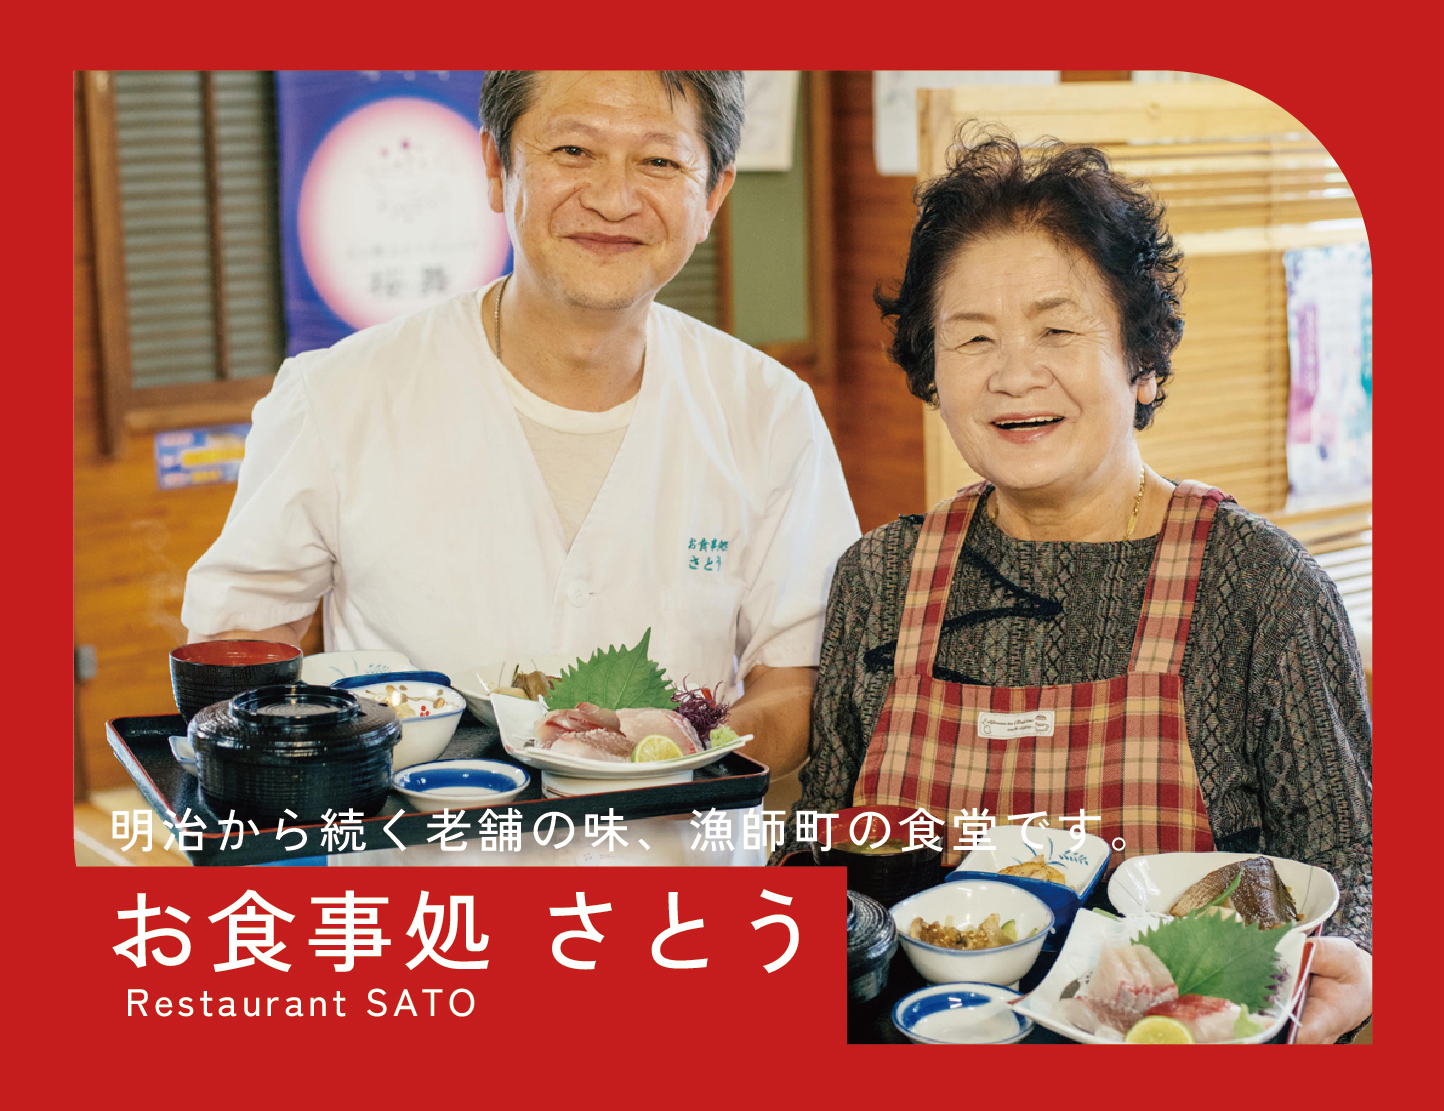 Restaurant Sato